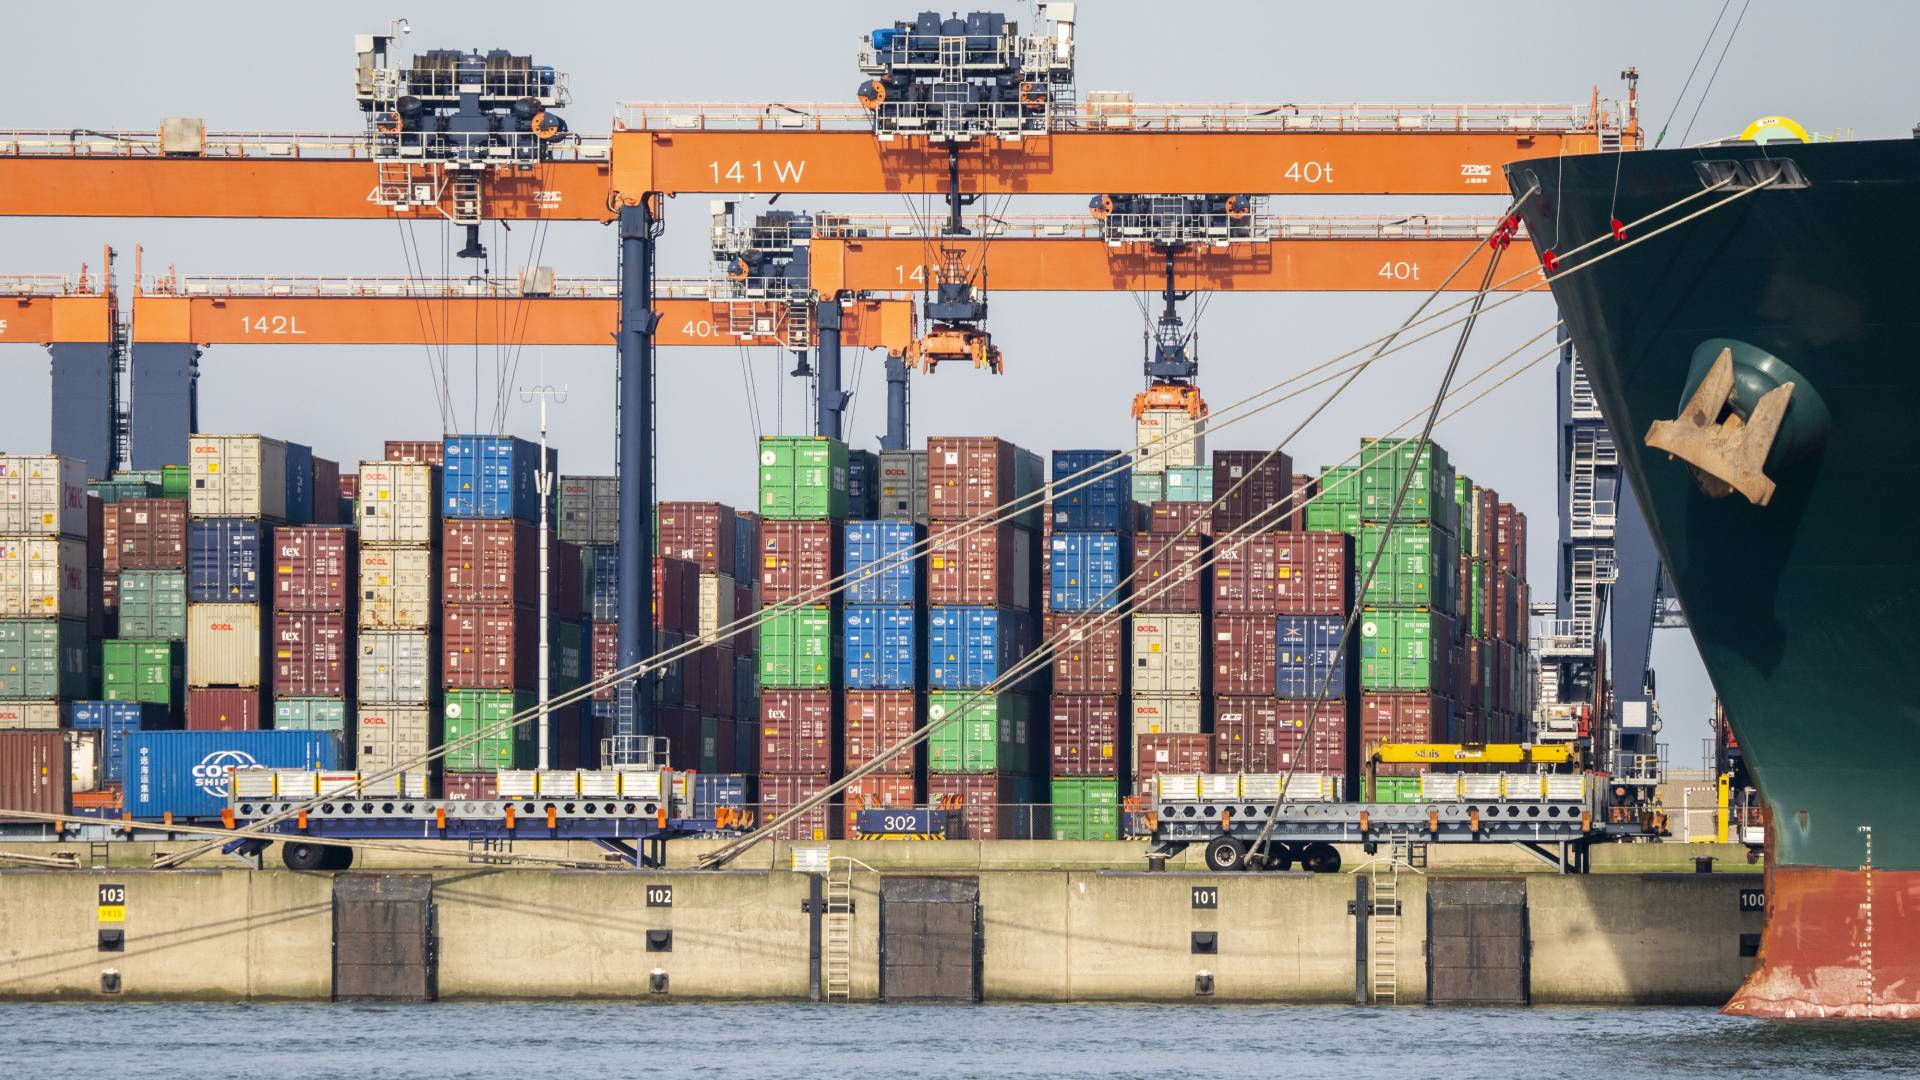 الحرب والعقوبات وأكوام الحاويات،ما تأثير كل هذا عن ميناء روتردام؟!